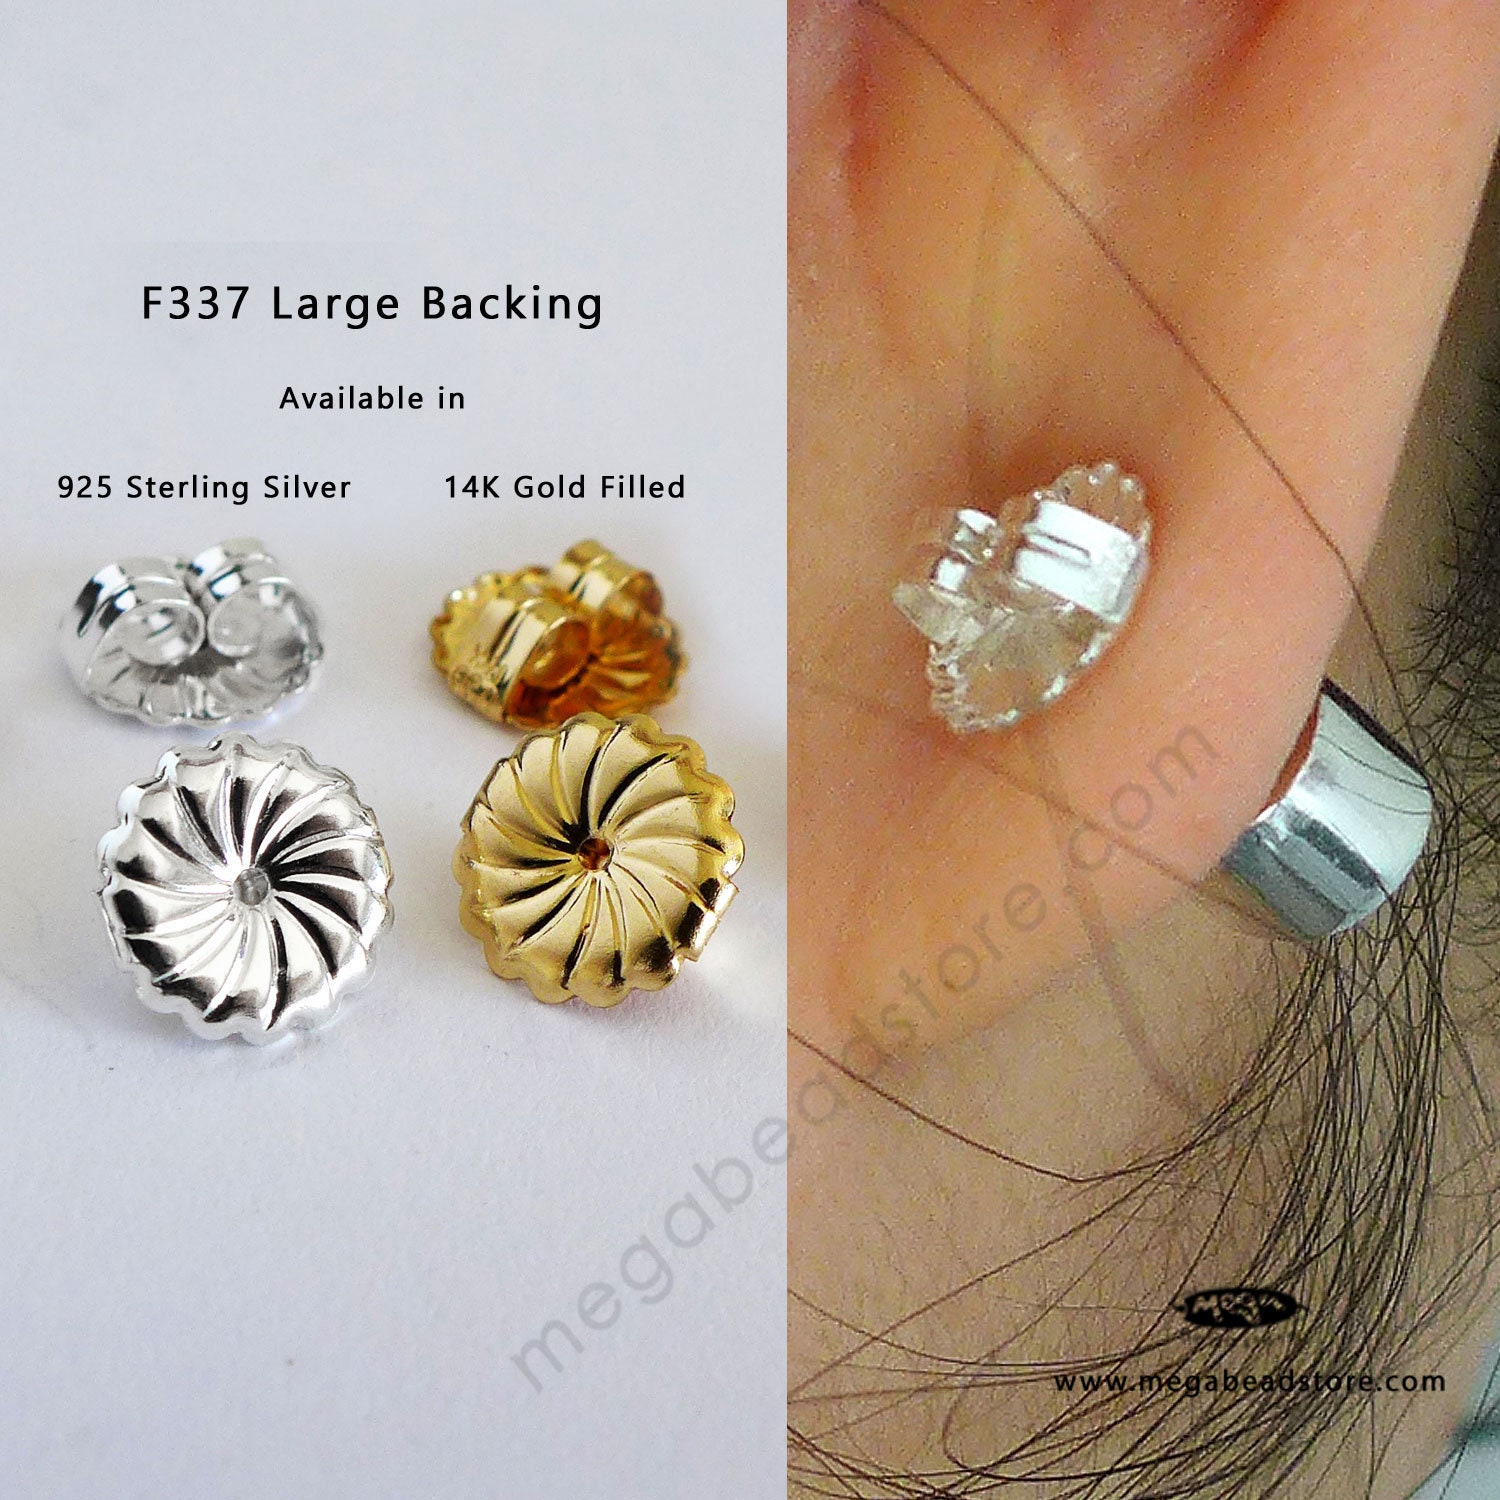 Soft Plastic Earring Backs, Hypoallergenic Earnuts, 5mm X 4mm 40